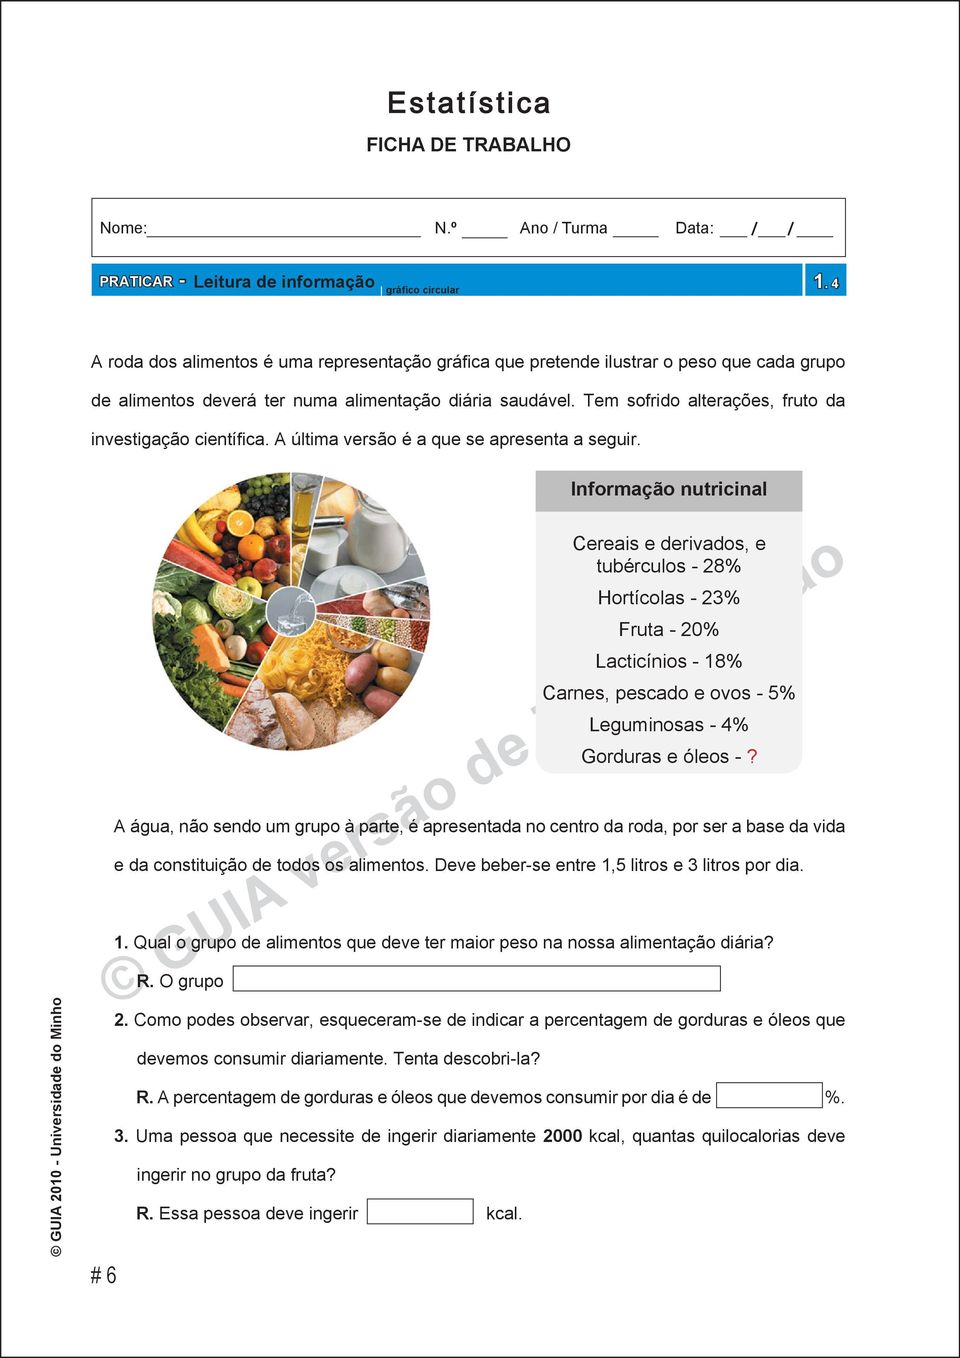 Informação nutricinal # 6 Cereais e derivados, e tubérculos - 28% Hortícolas - 23% Fruta - 20% Lacticínios - 18% Carnes, pescado e ovos - 5% Leguminosas - 4% Gorduras e óleos -?